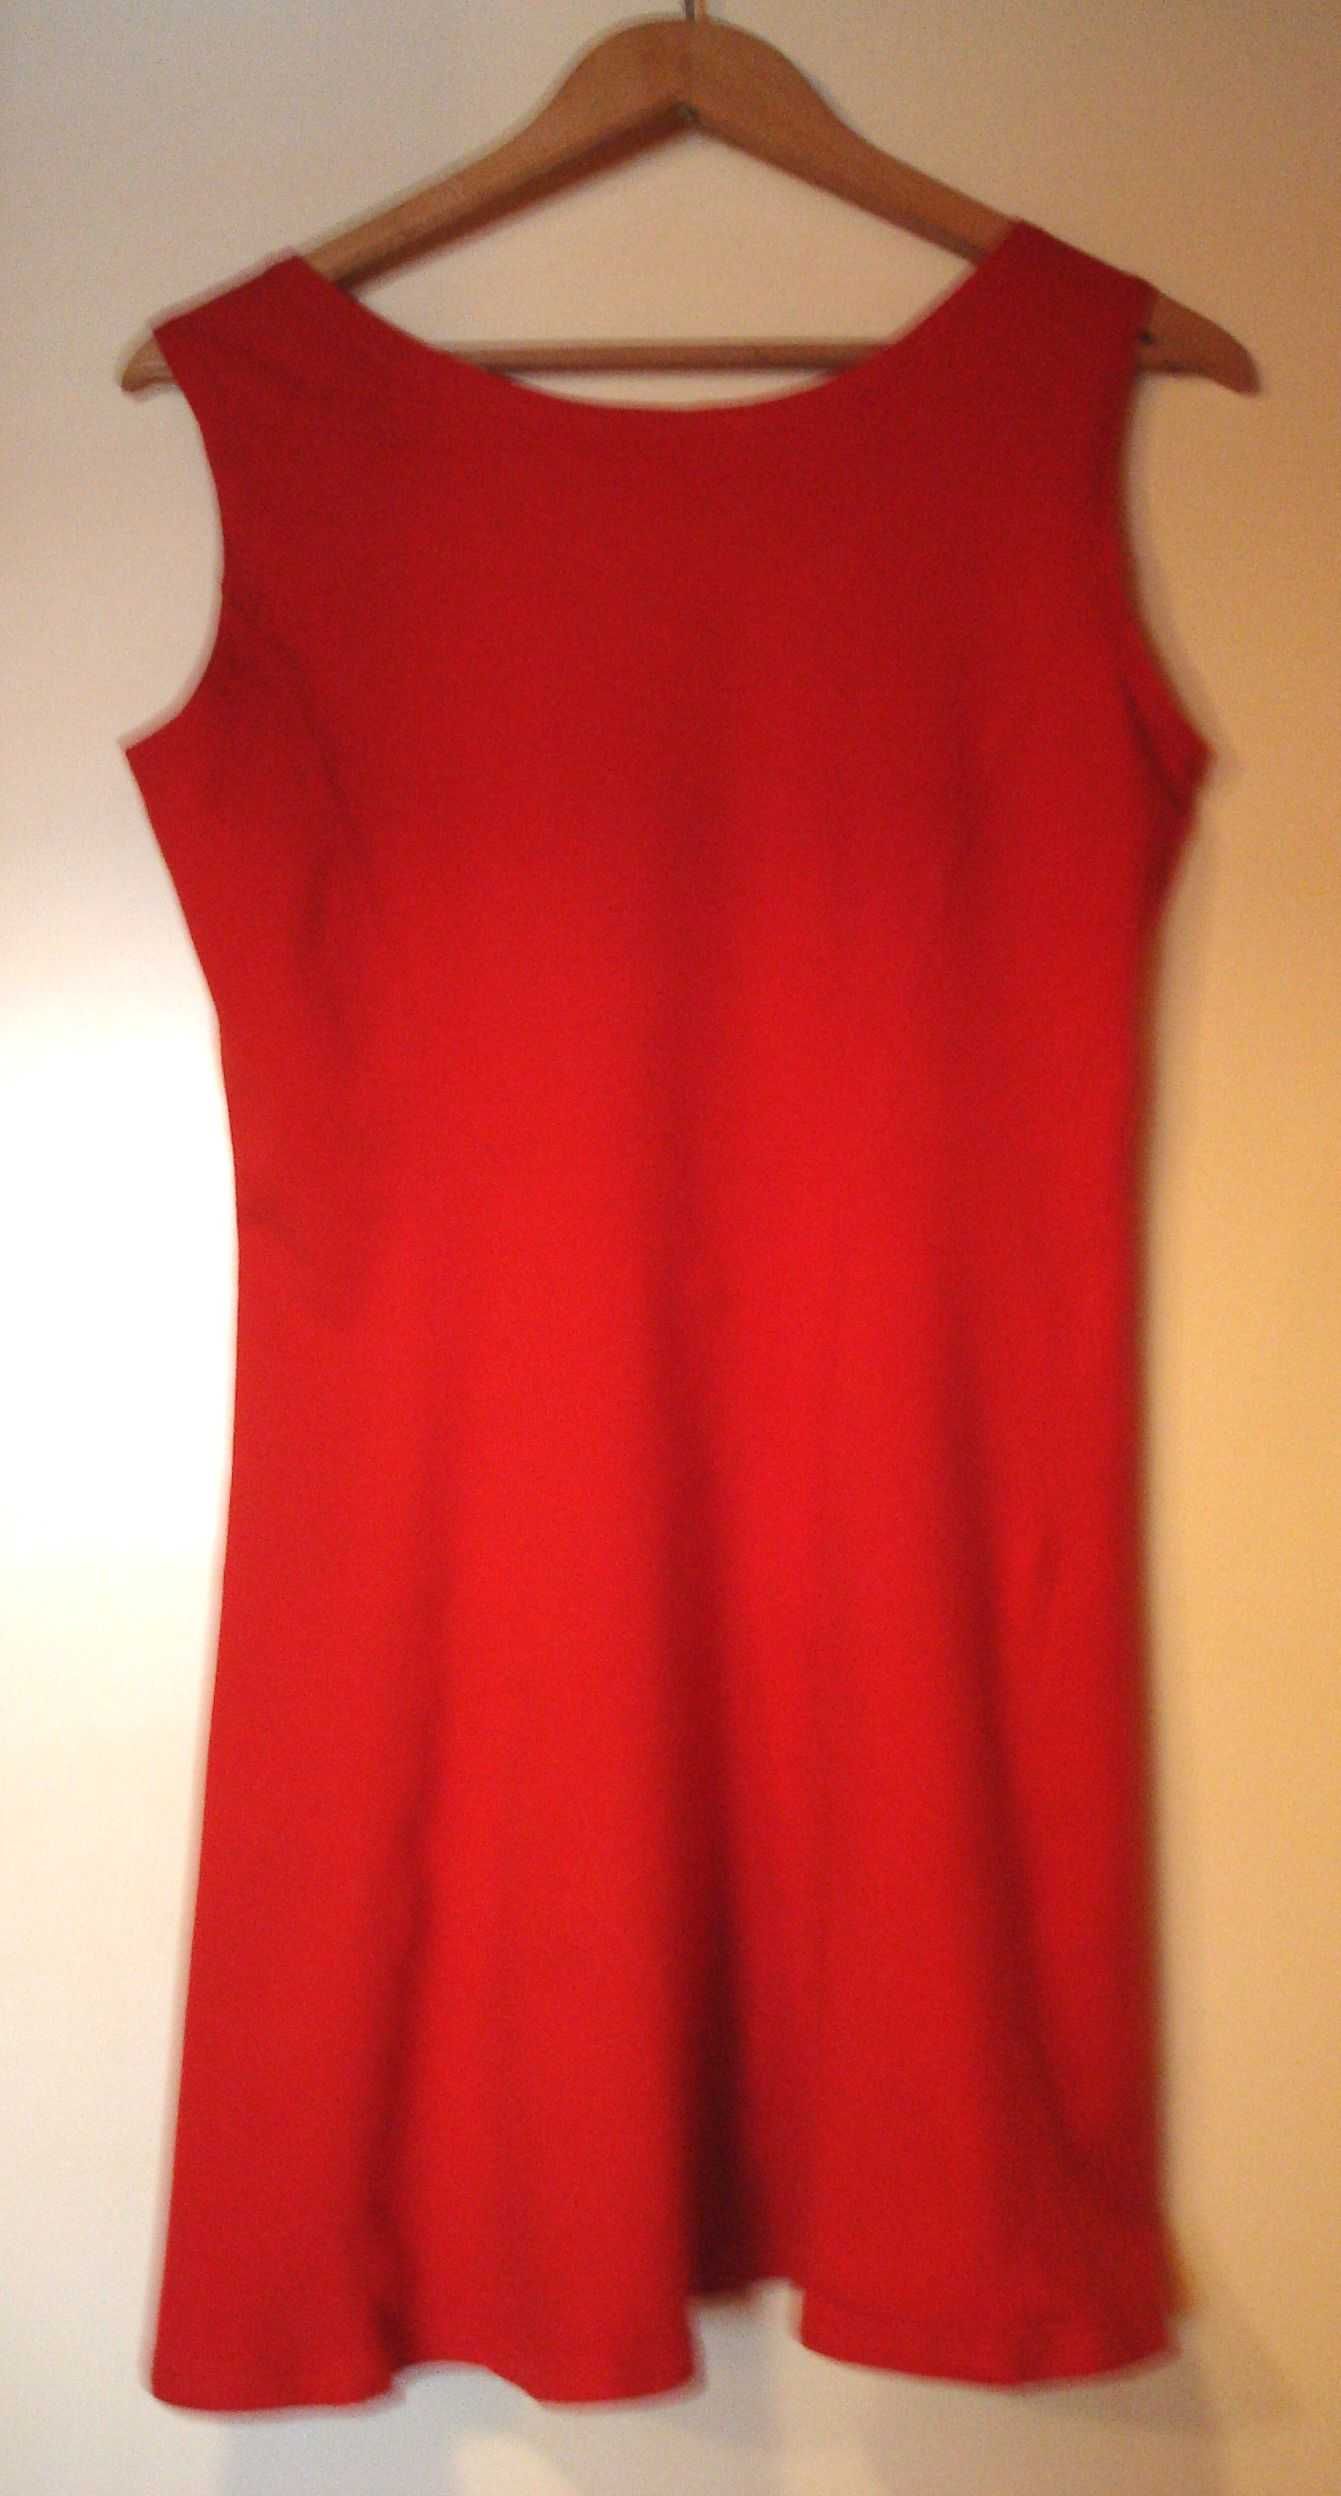 Czerwona, krótka, bawełniana bez rękawów sukienka. Rozm. S/ M.